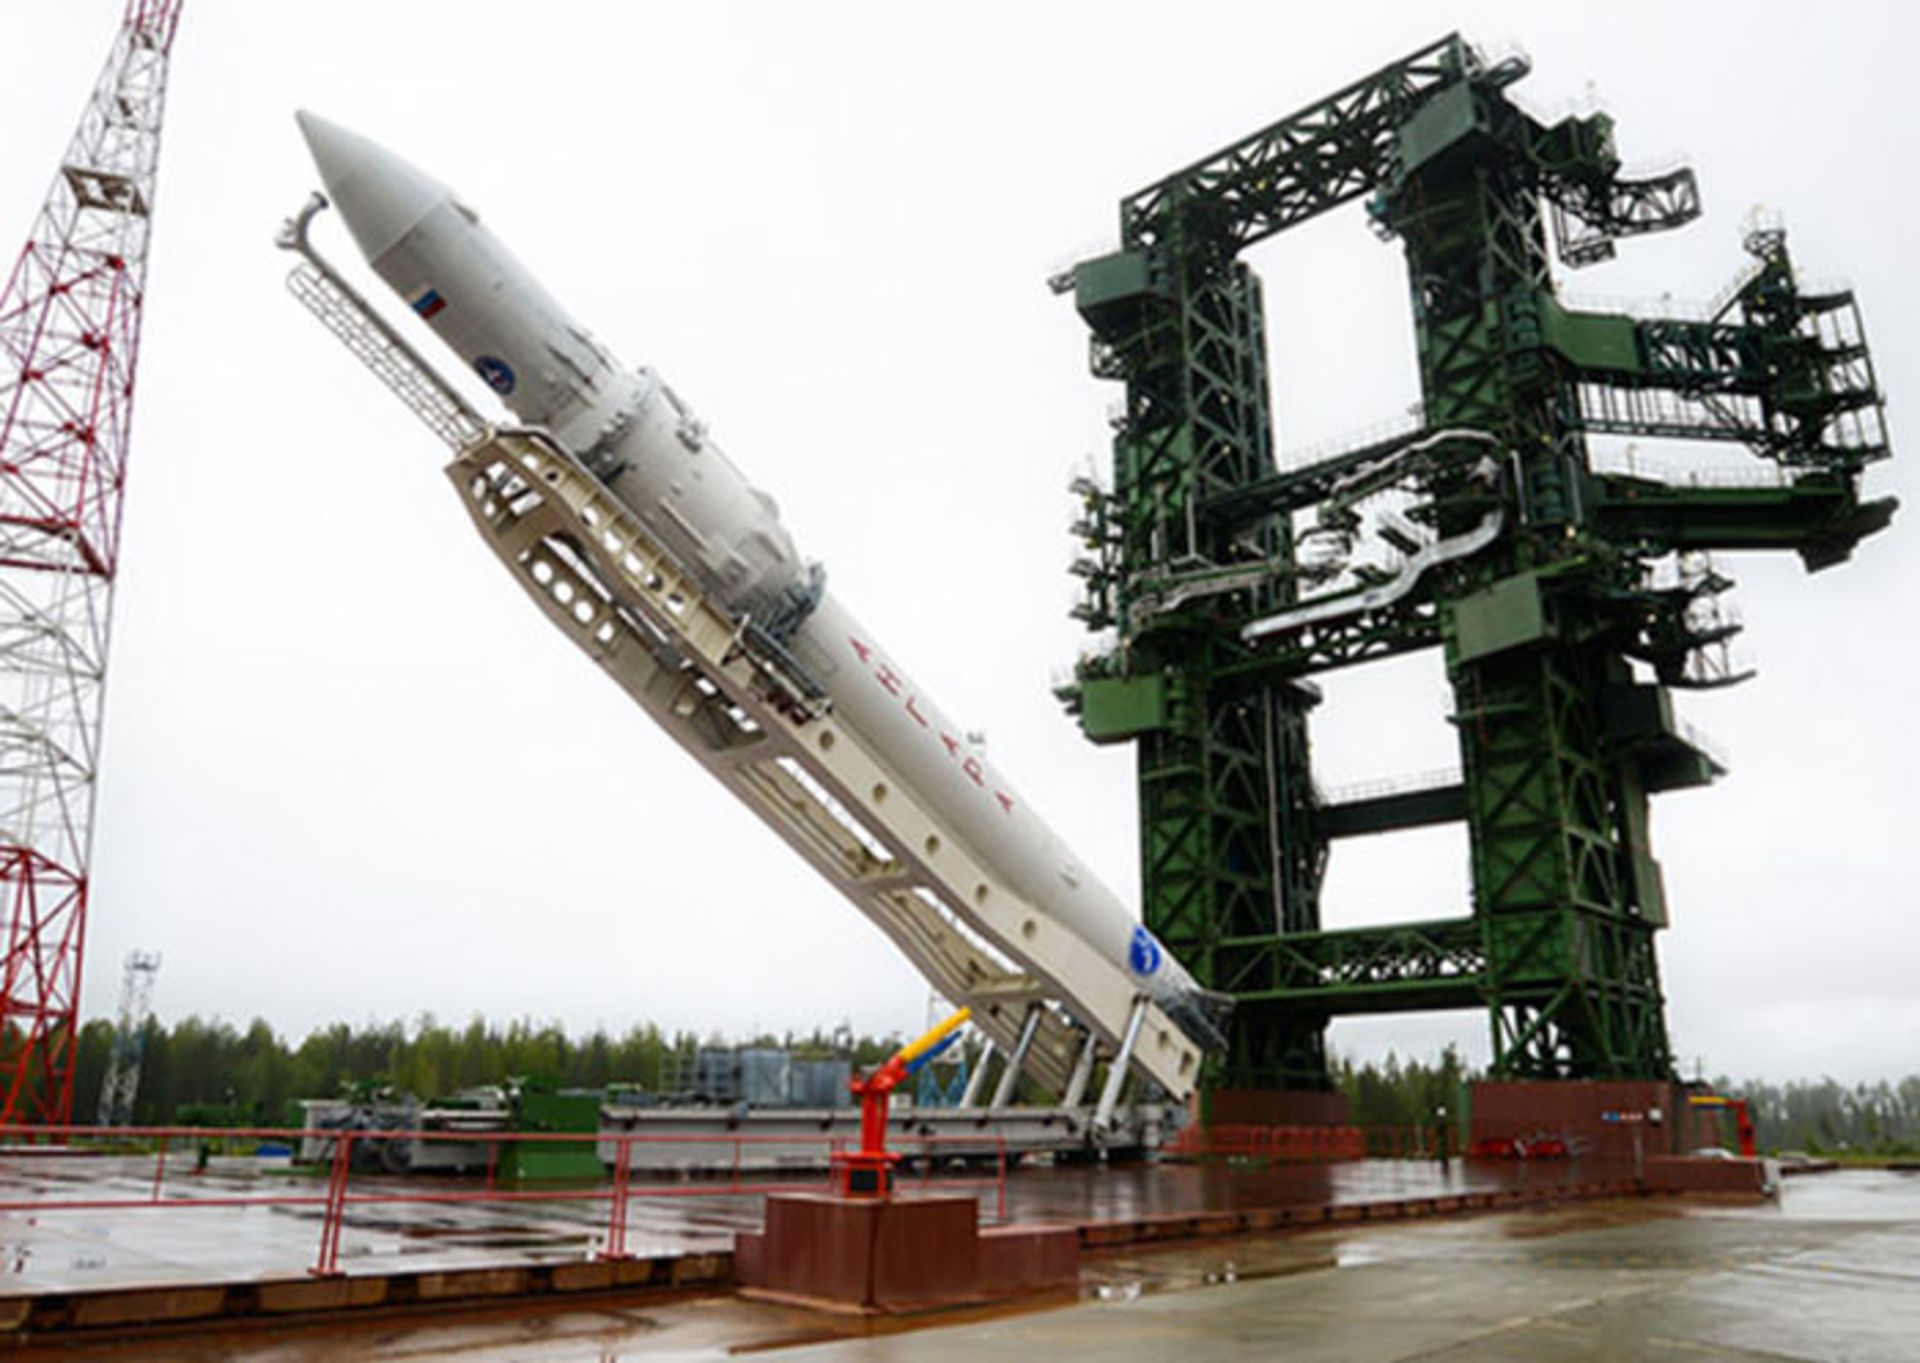 6-angara-rocket-rollout-pad-lift